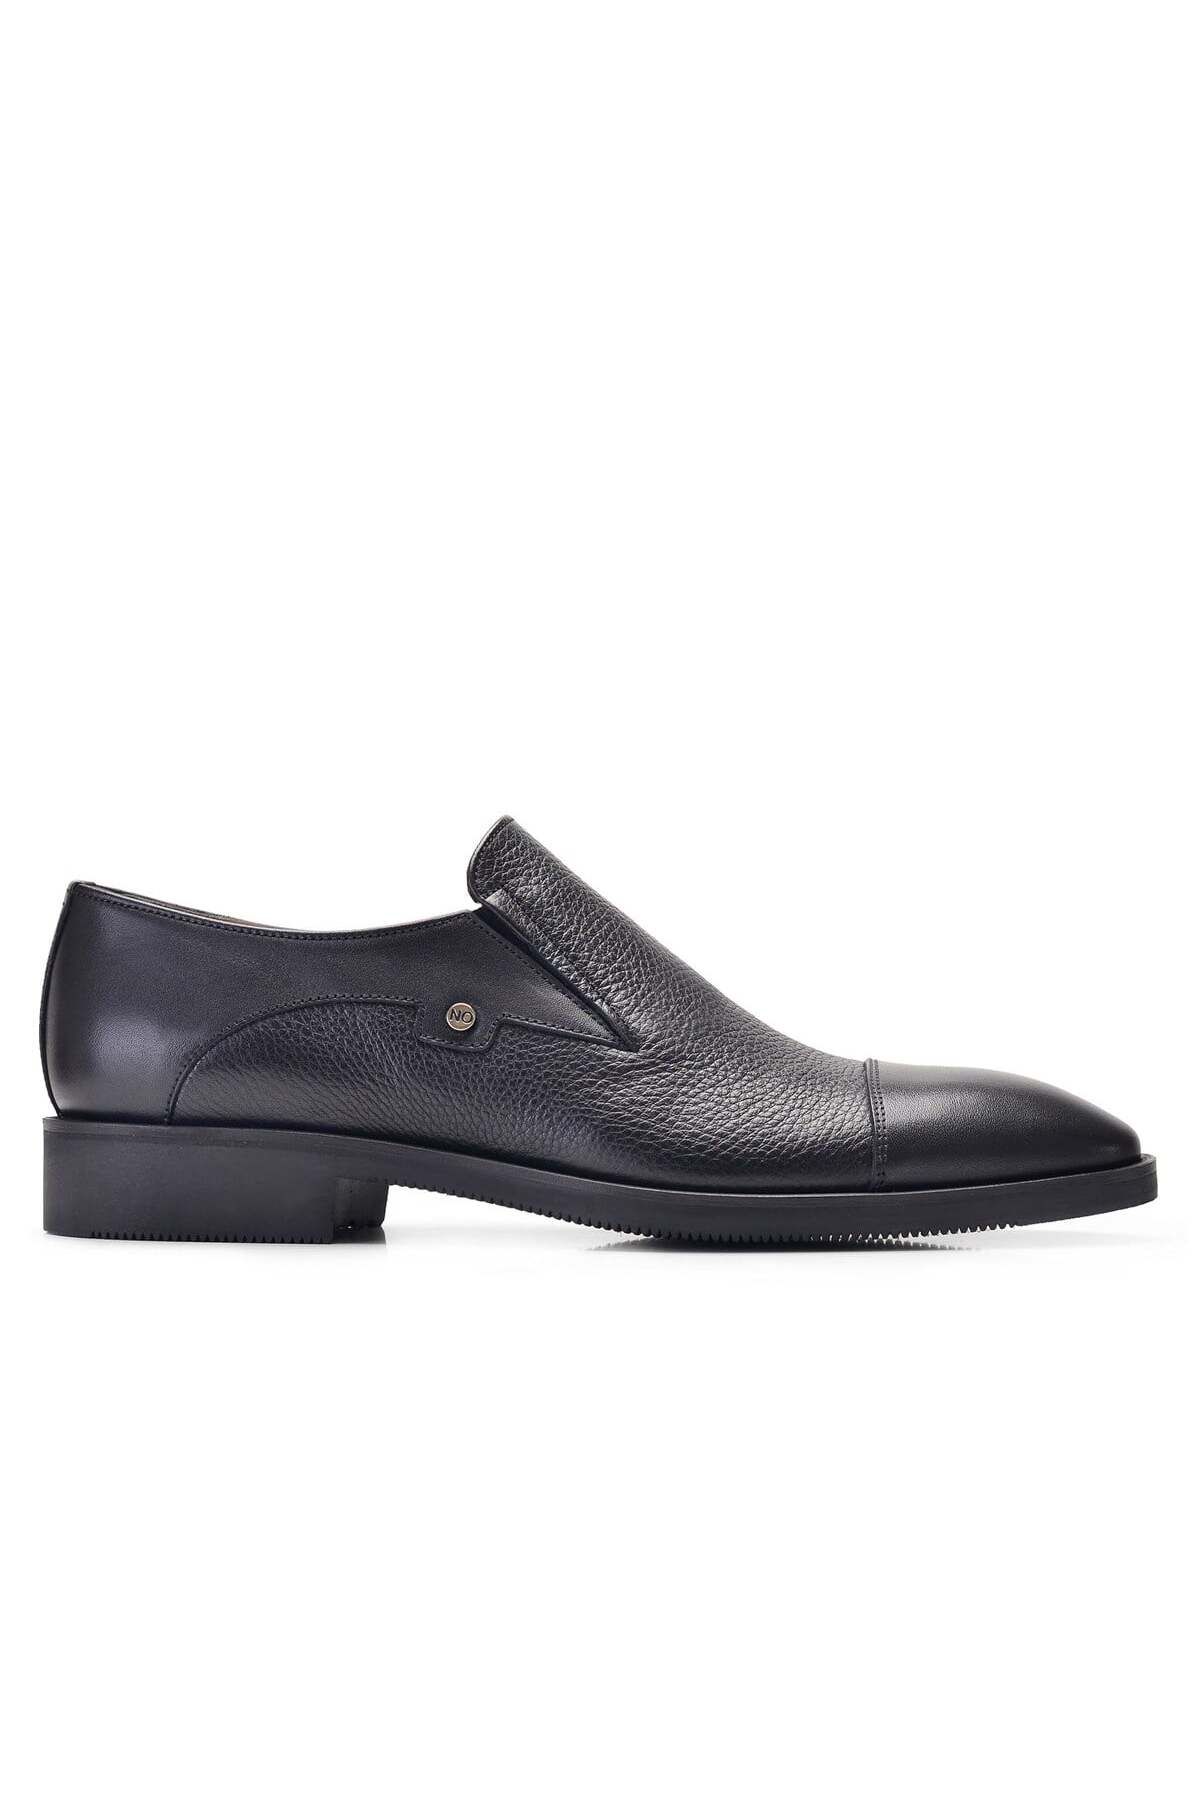 Nevzat Onay Siyah Klasik Loafer Erkek Ayakkabı -11952-